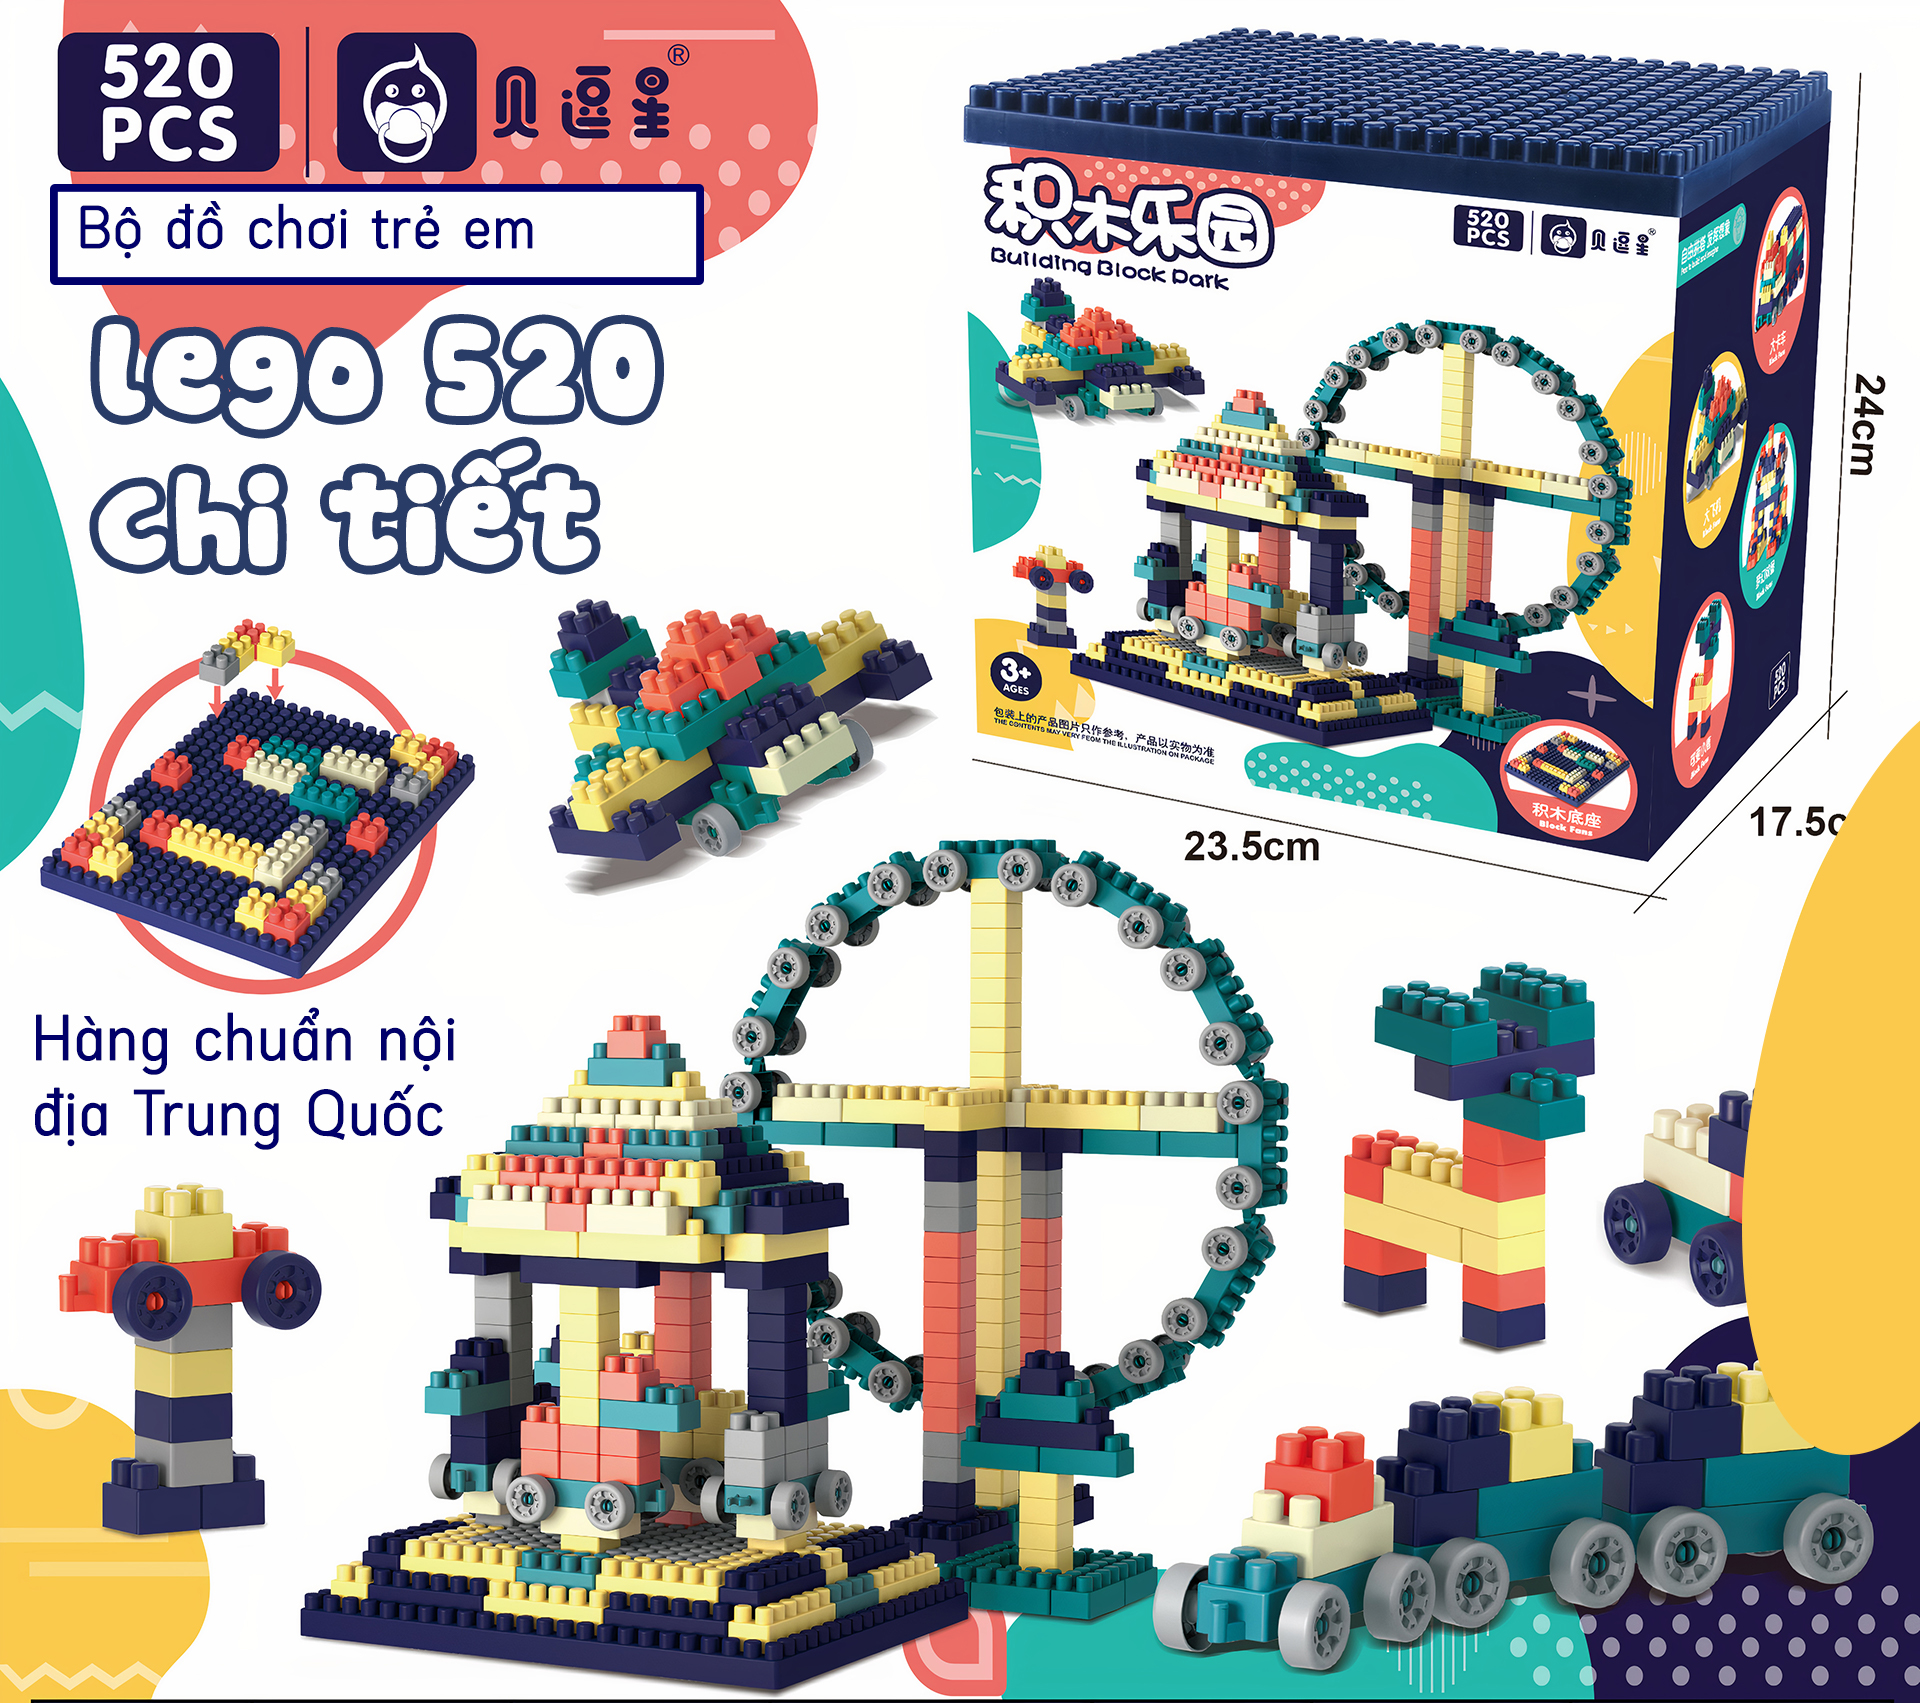 BỘ LEGO 520 CHI TIẾT,Bộ Lego 520 Chi Tiết Nhựa An Toàn Lắp Ráp Thông Minh